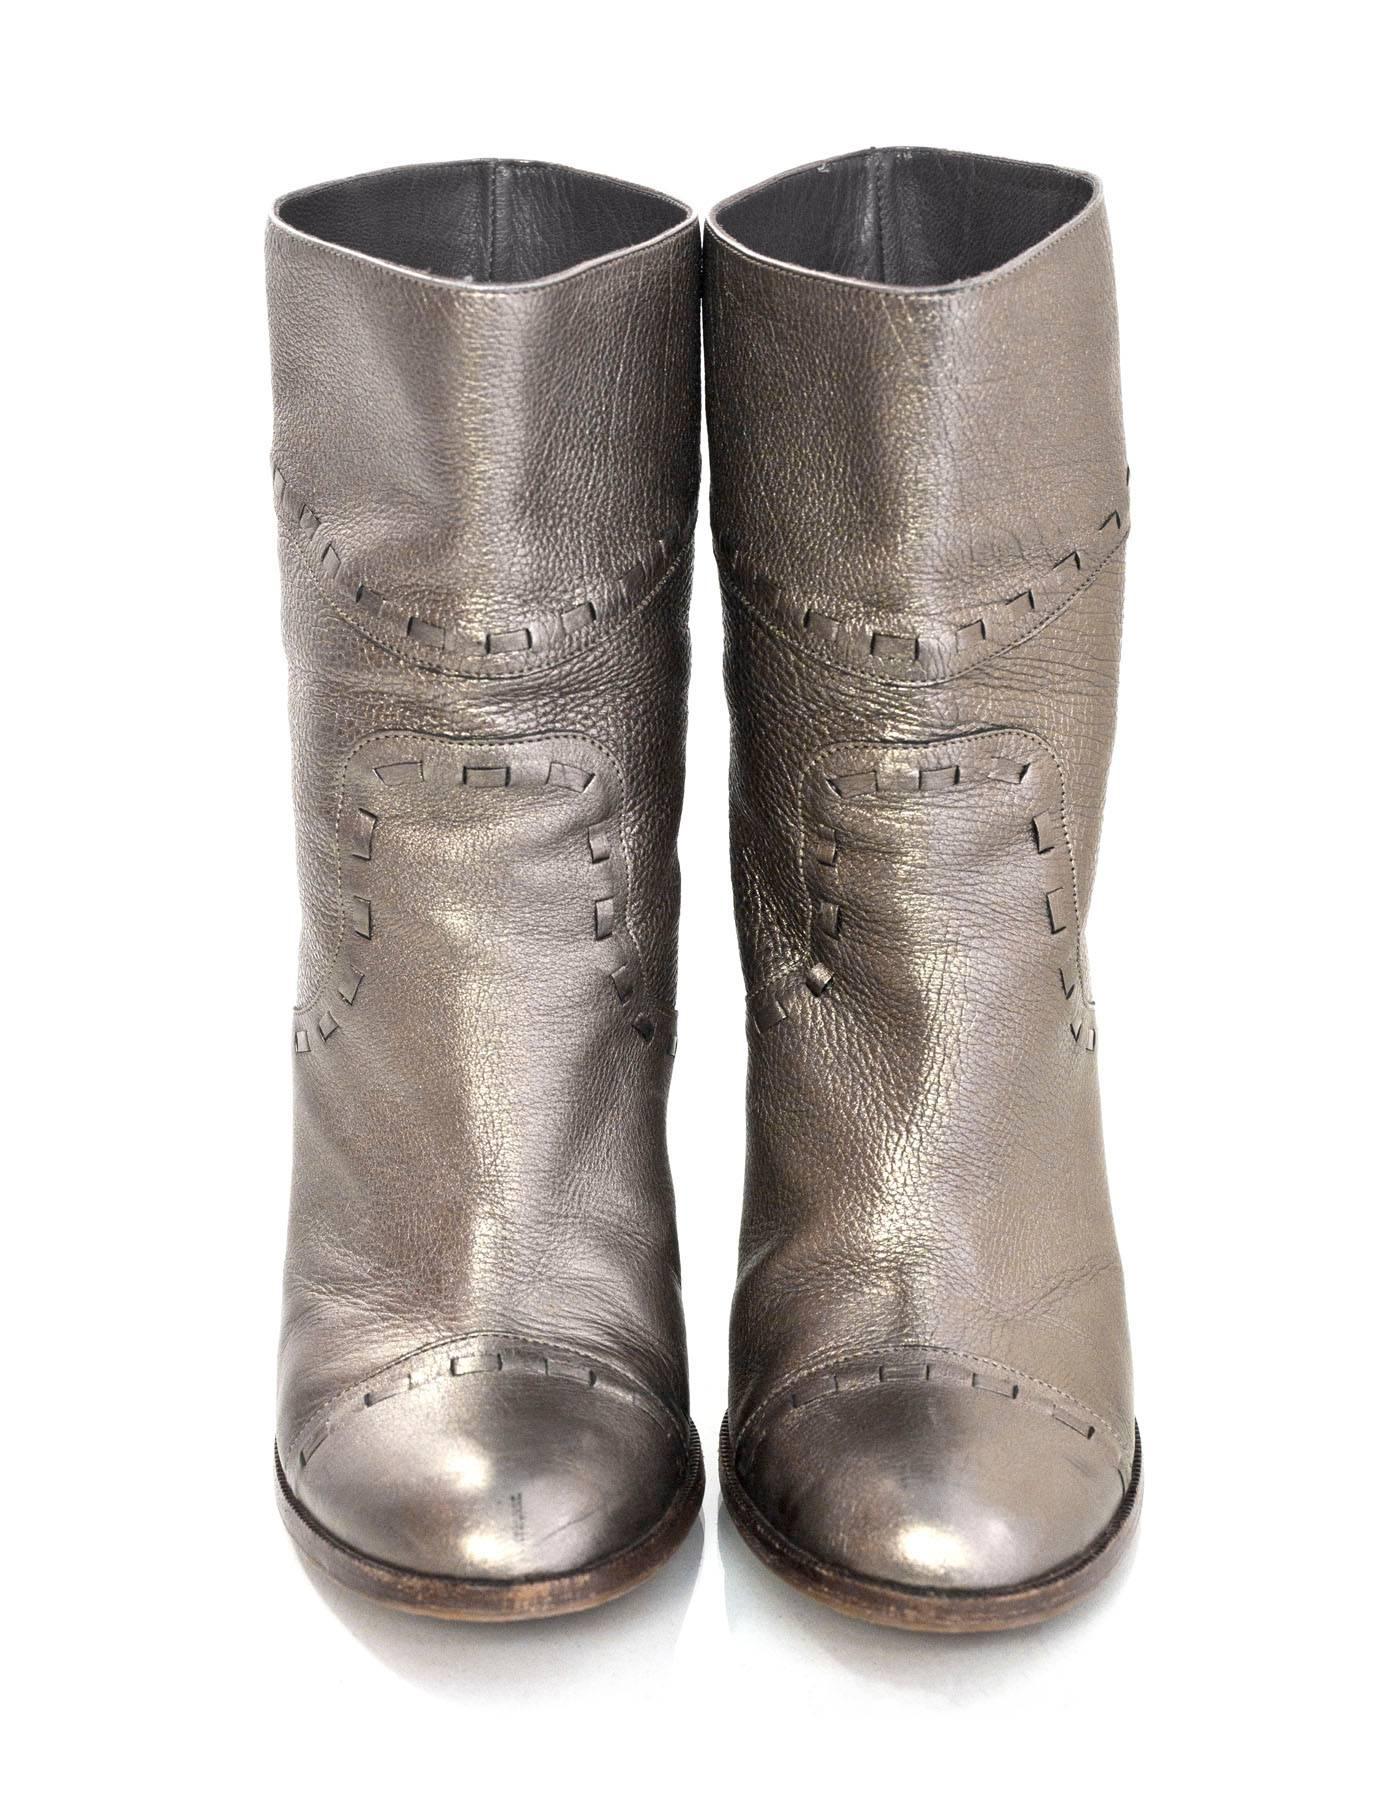 bronze metallic boots